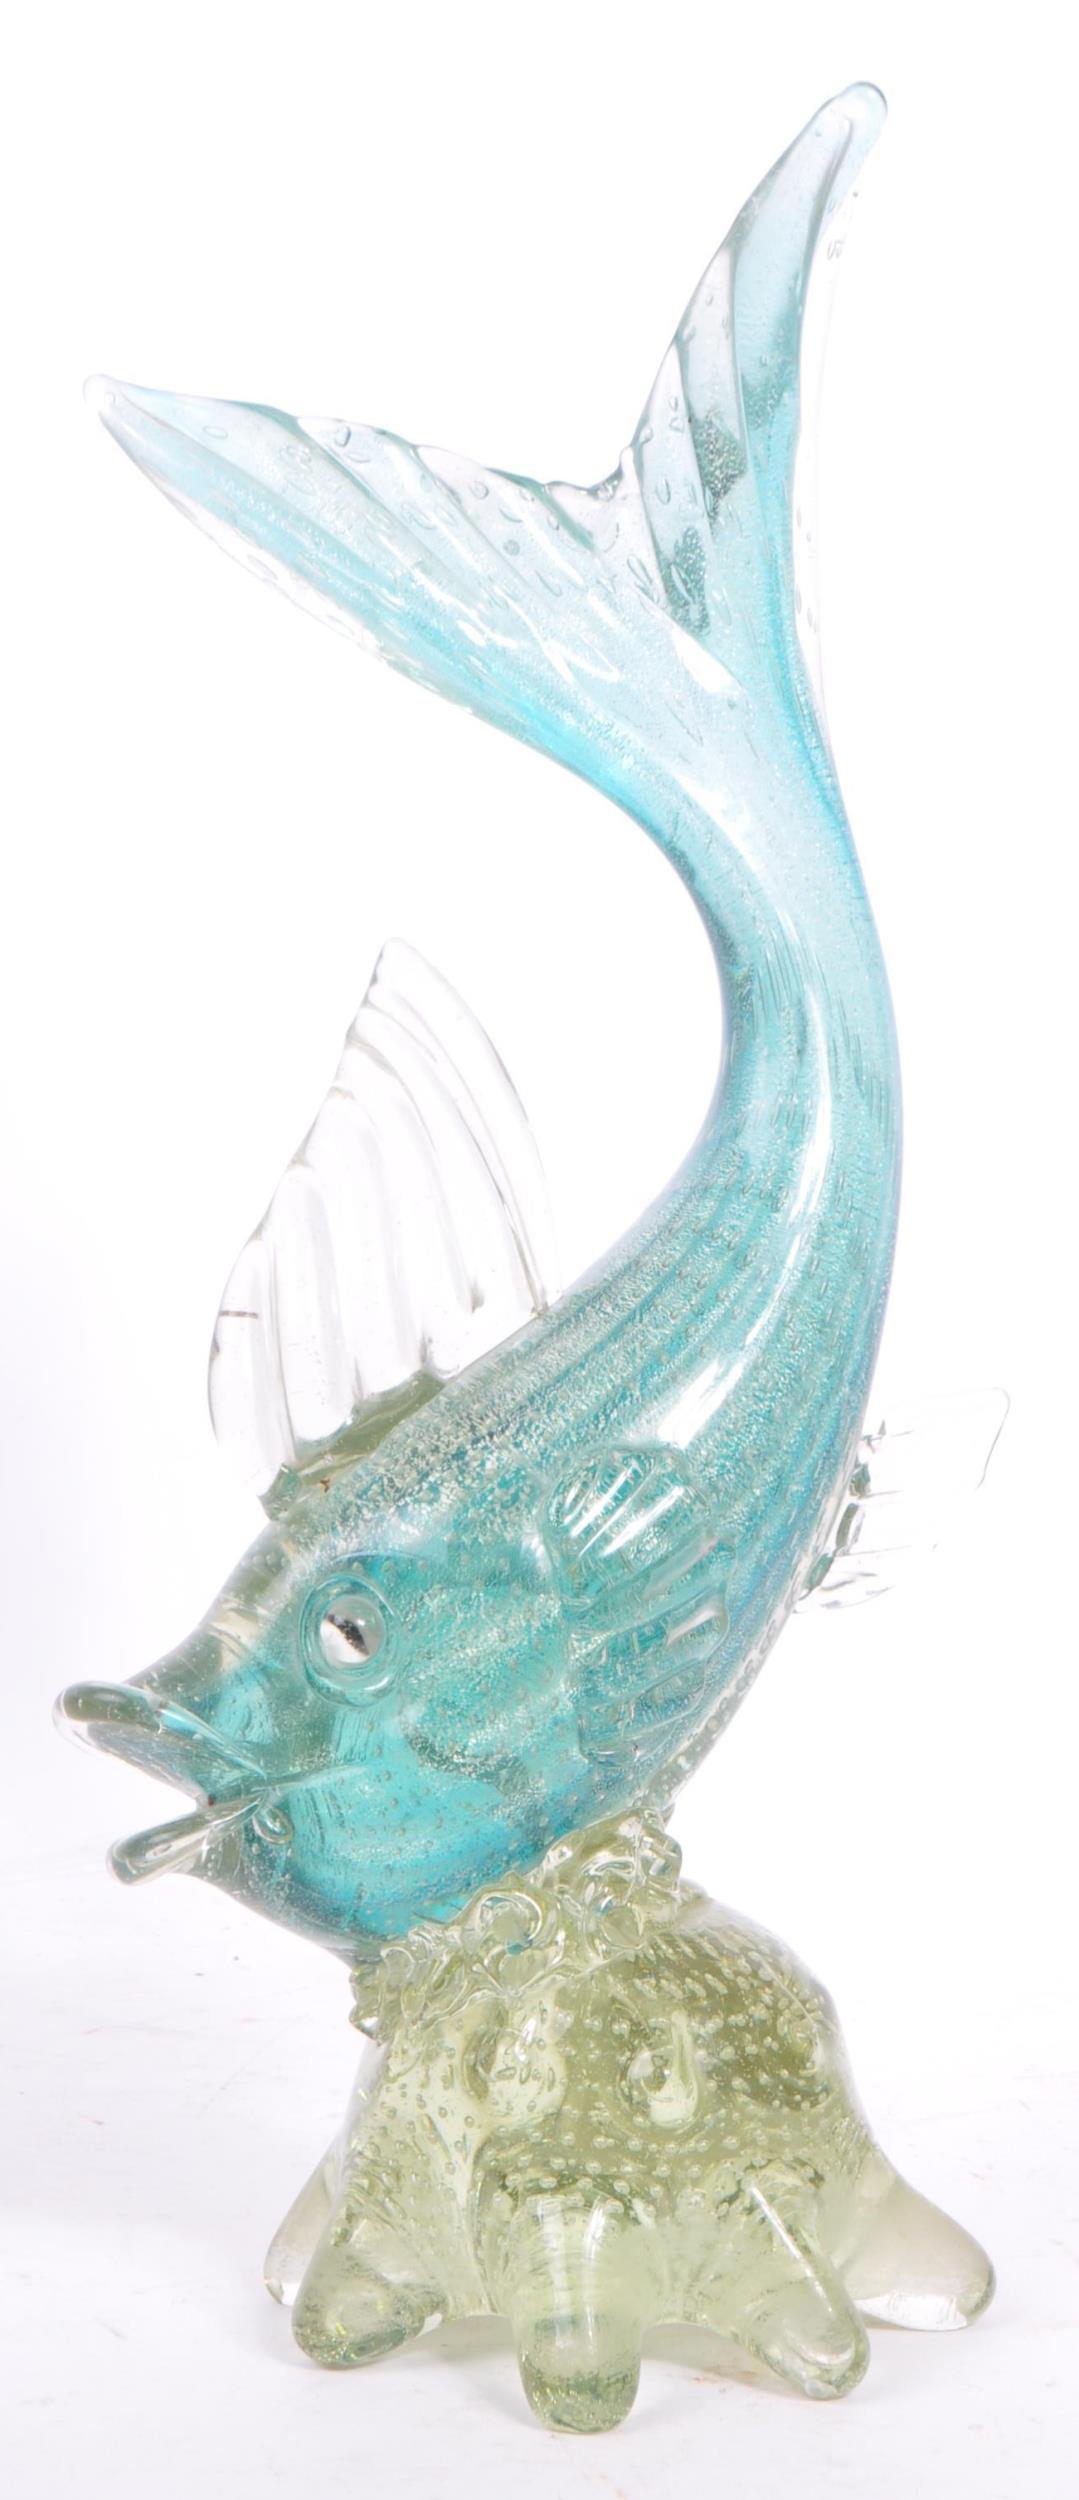 MURANO - MID 20TH CENTURY STUDIO GLASS FISH